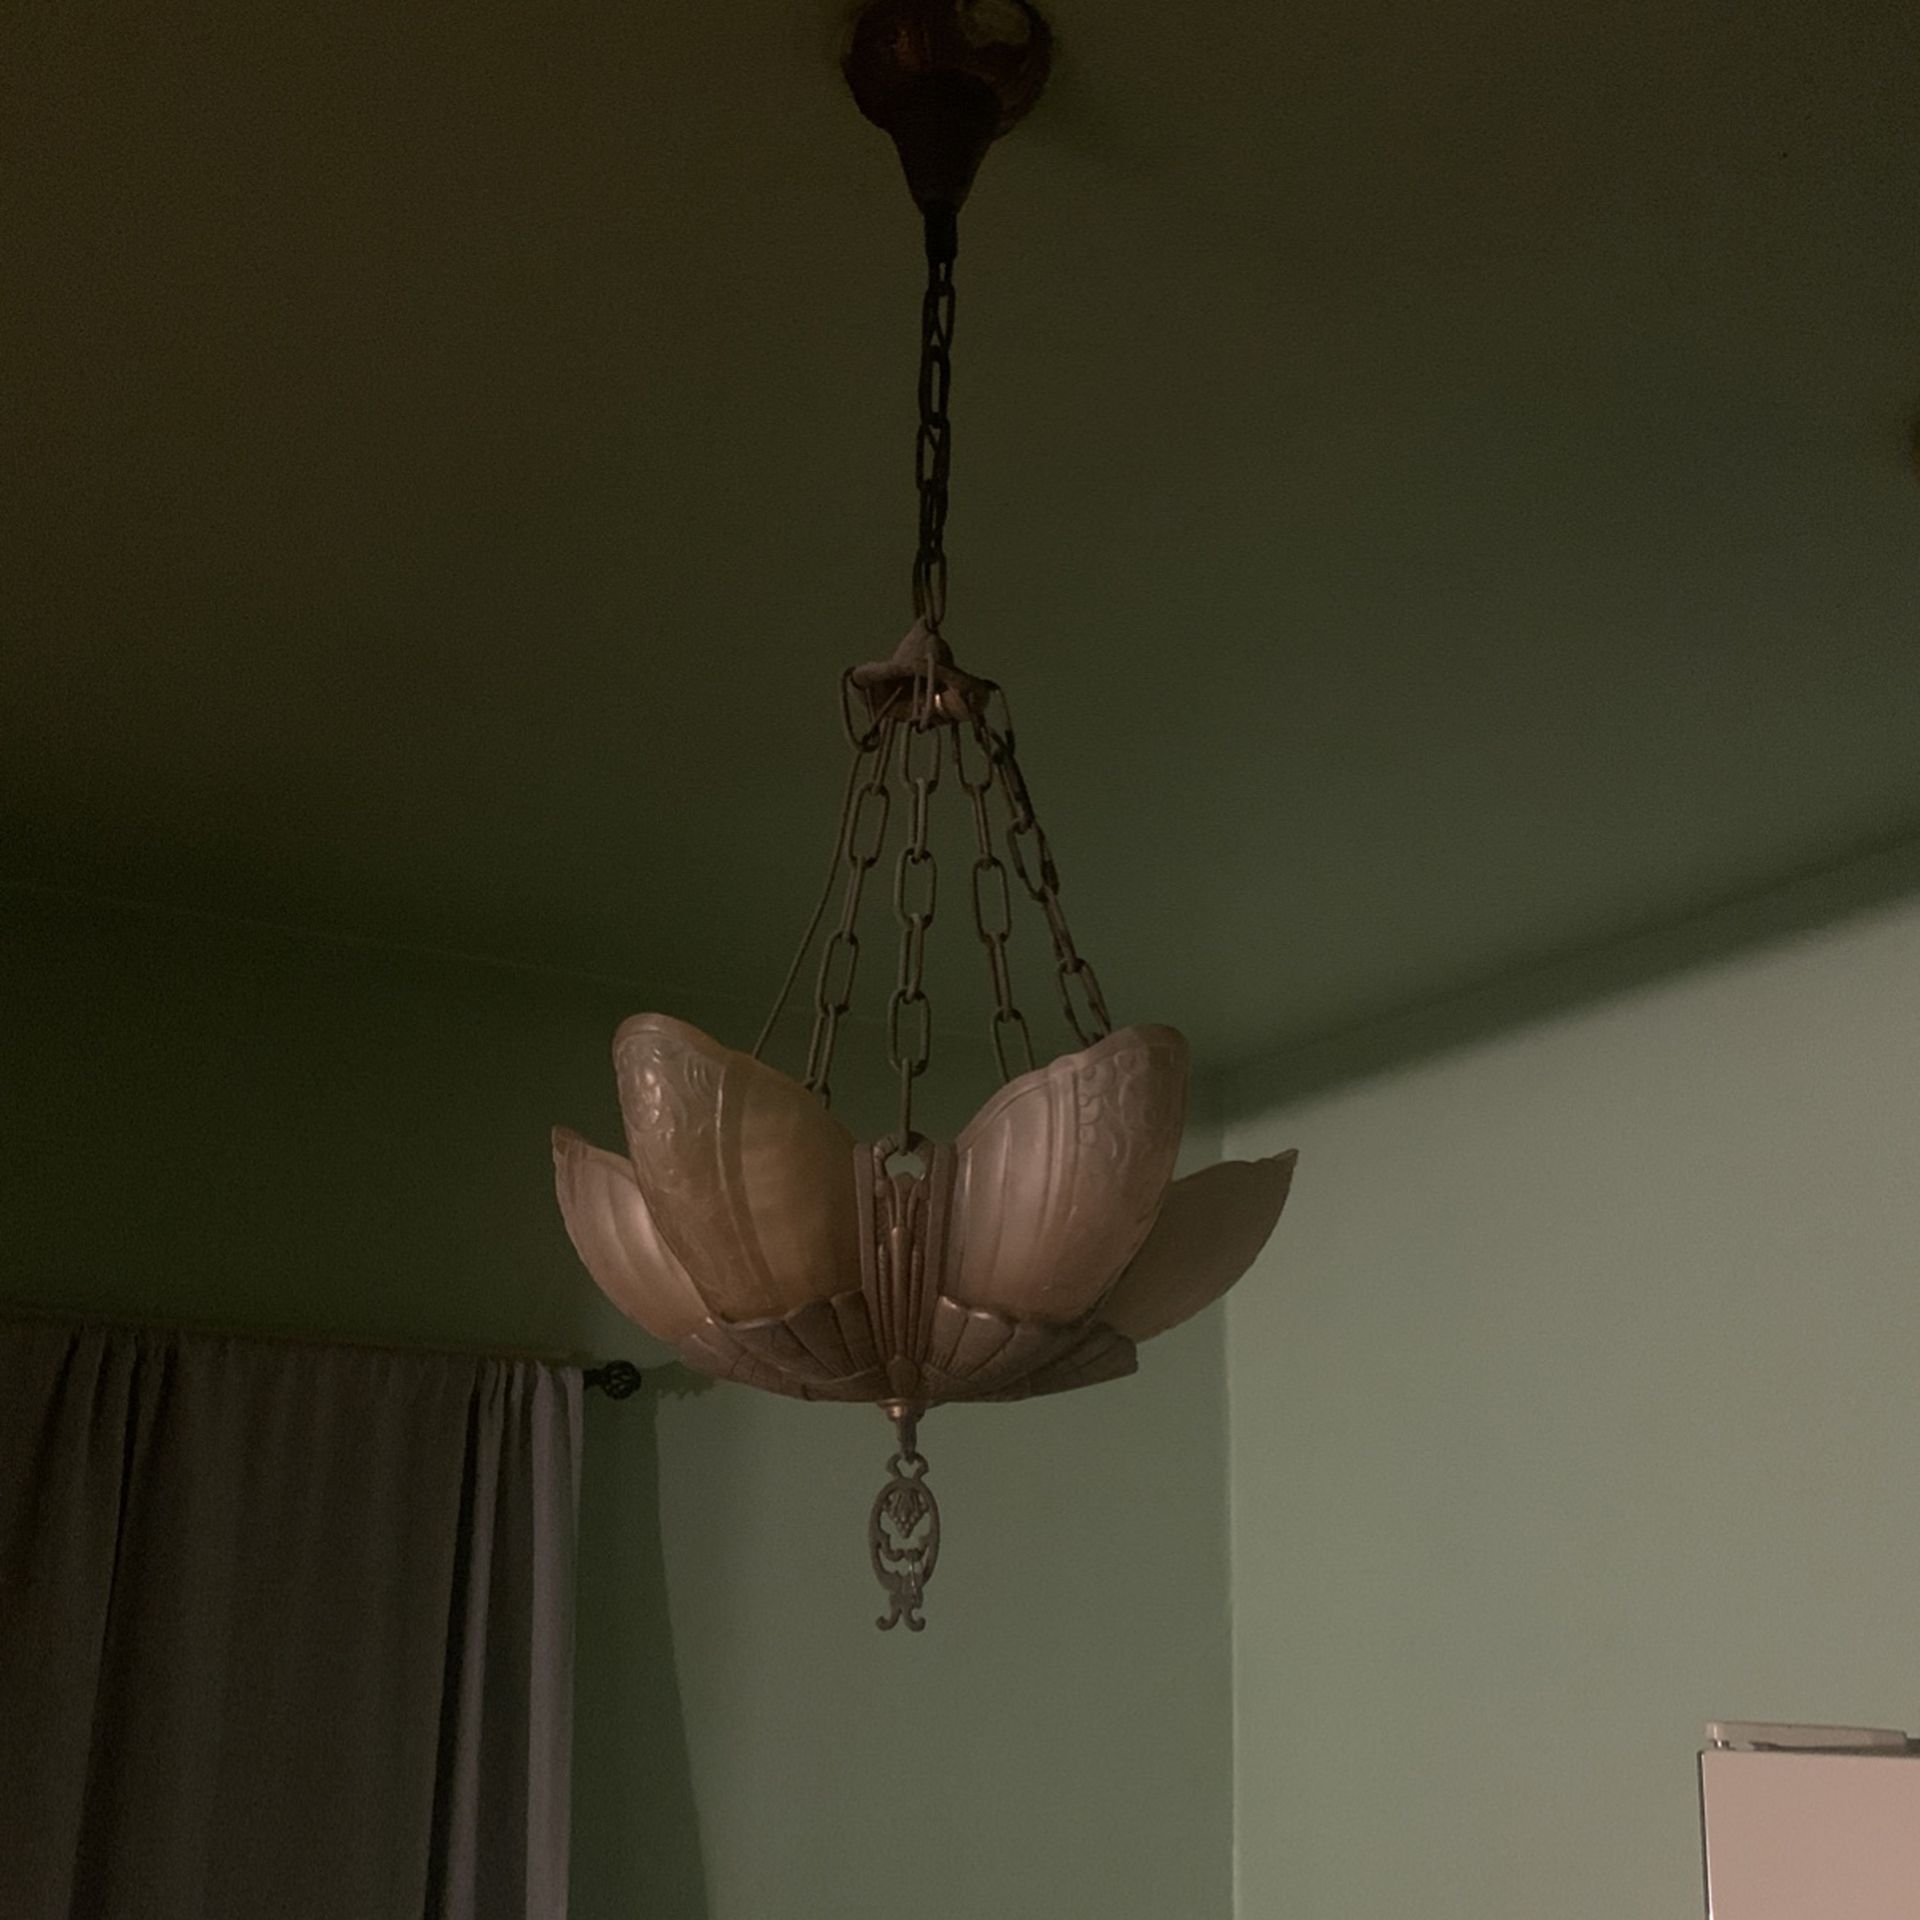 Antique chandelier light fixture